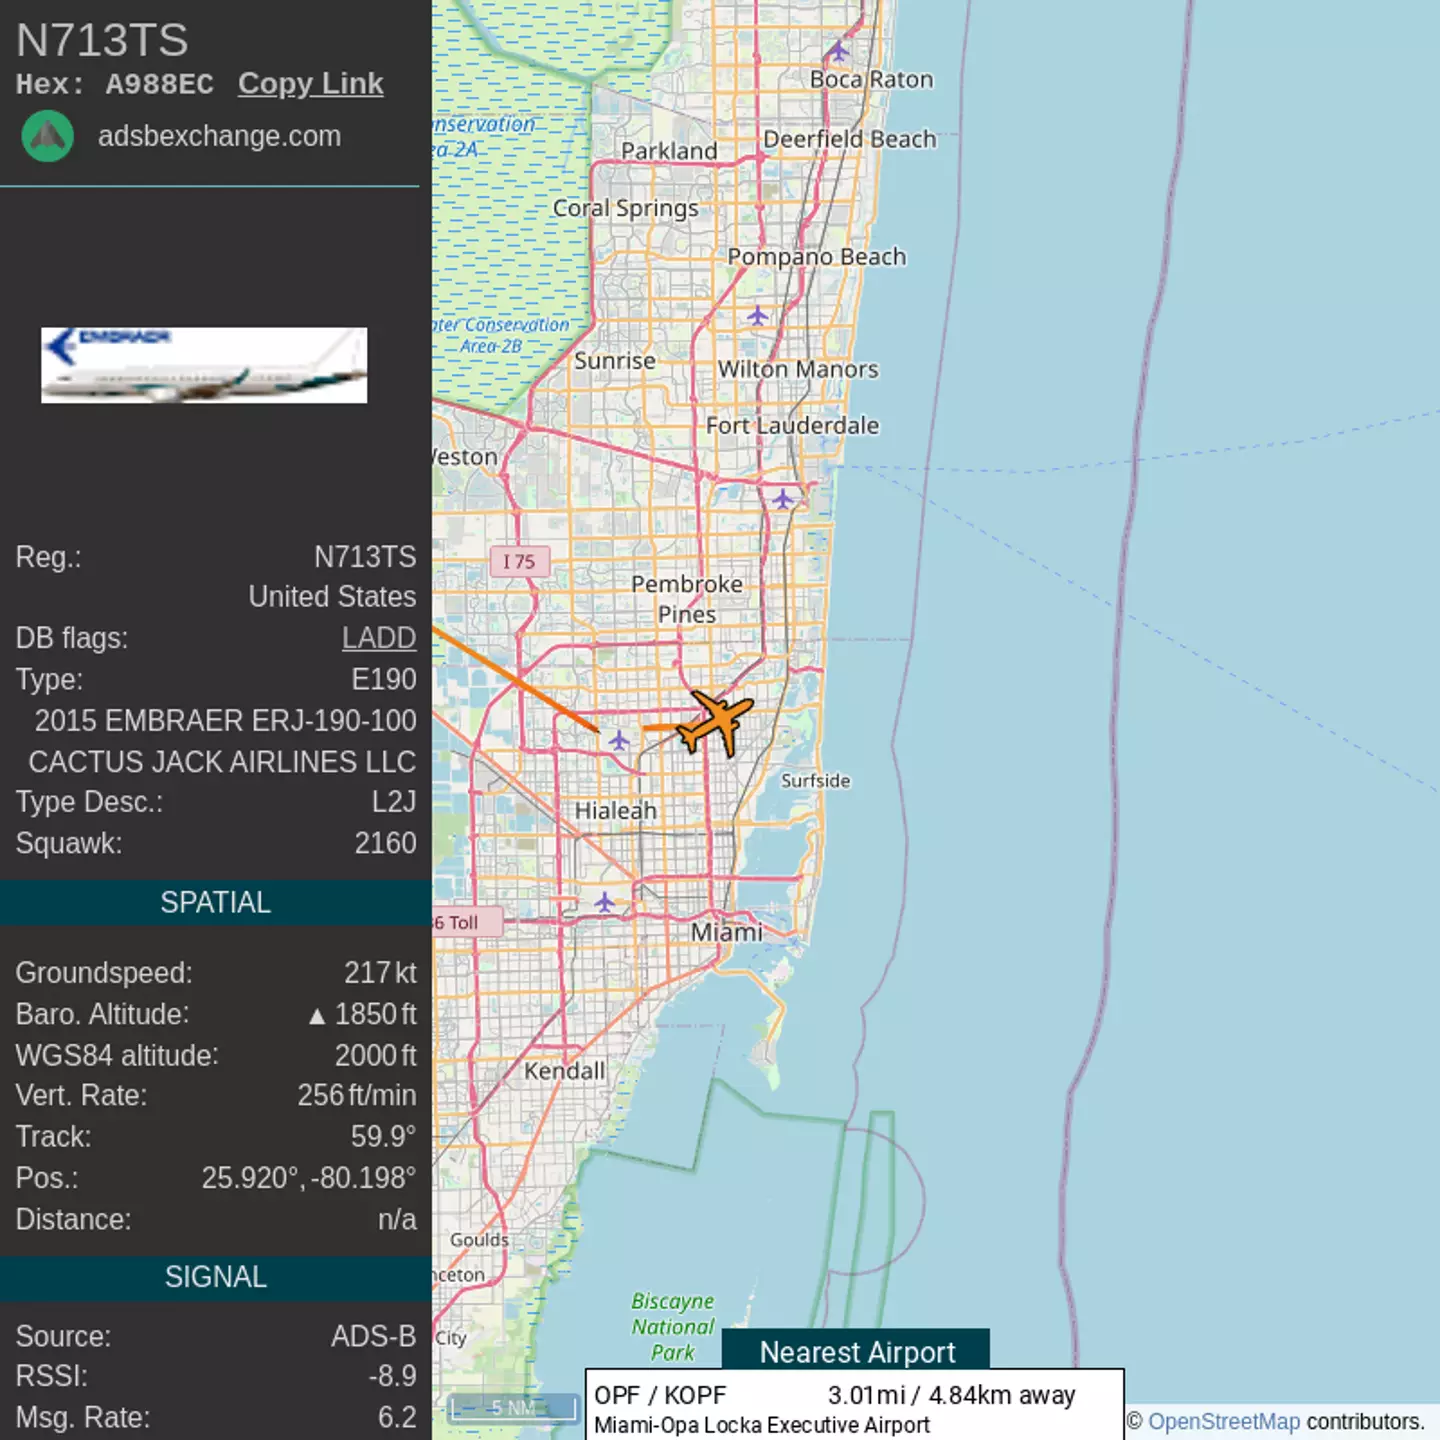 Travis Scott's plane also flew from 'near Miami, Florida' to 'Van Nuys, California'.